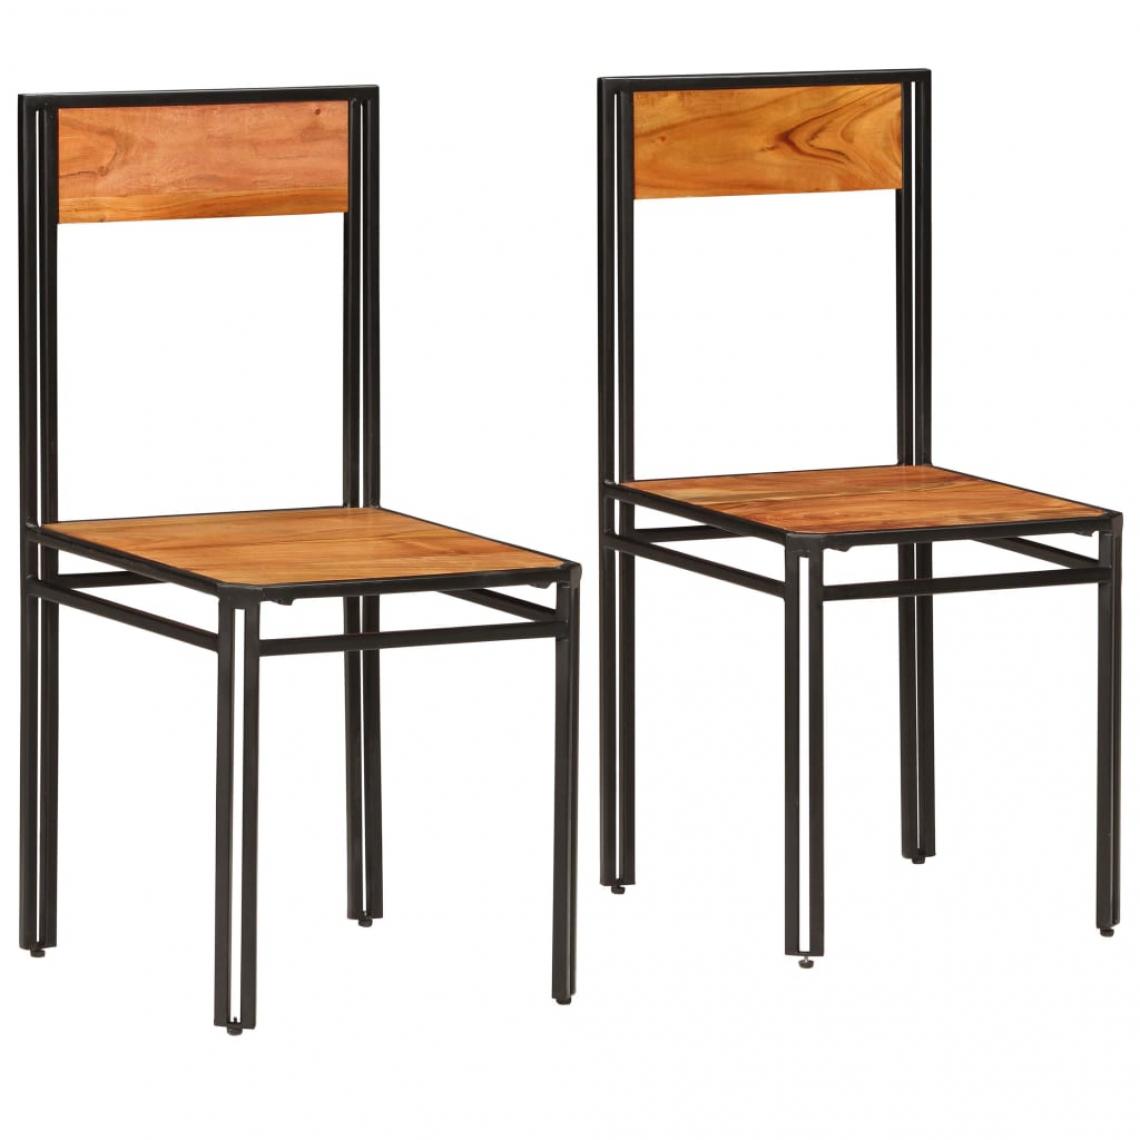 Decoshop26 - Lot de 2 chaises de salle à manger cuisine design classique bois d'acacia massif CDS020275 - Chaises